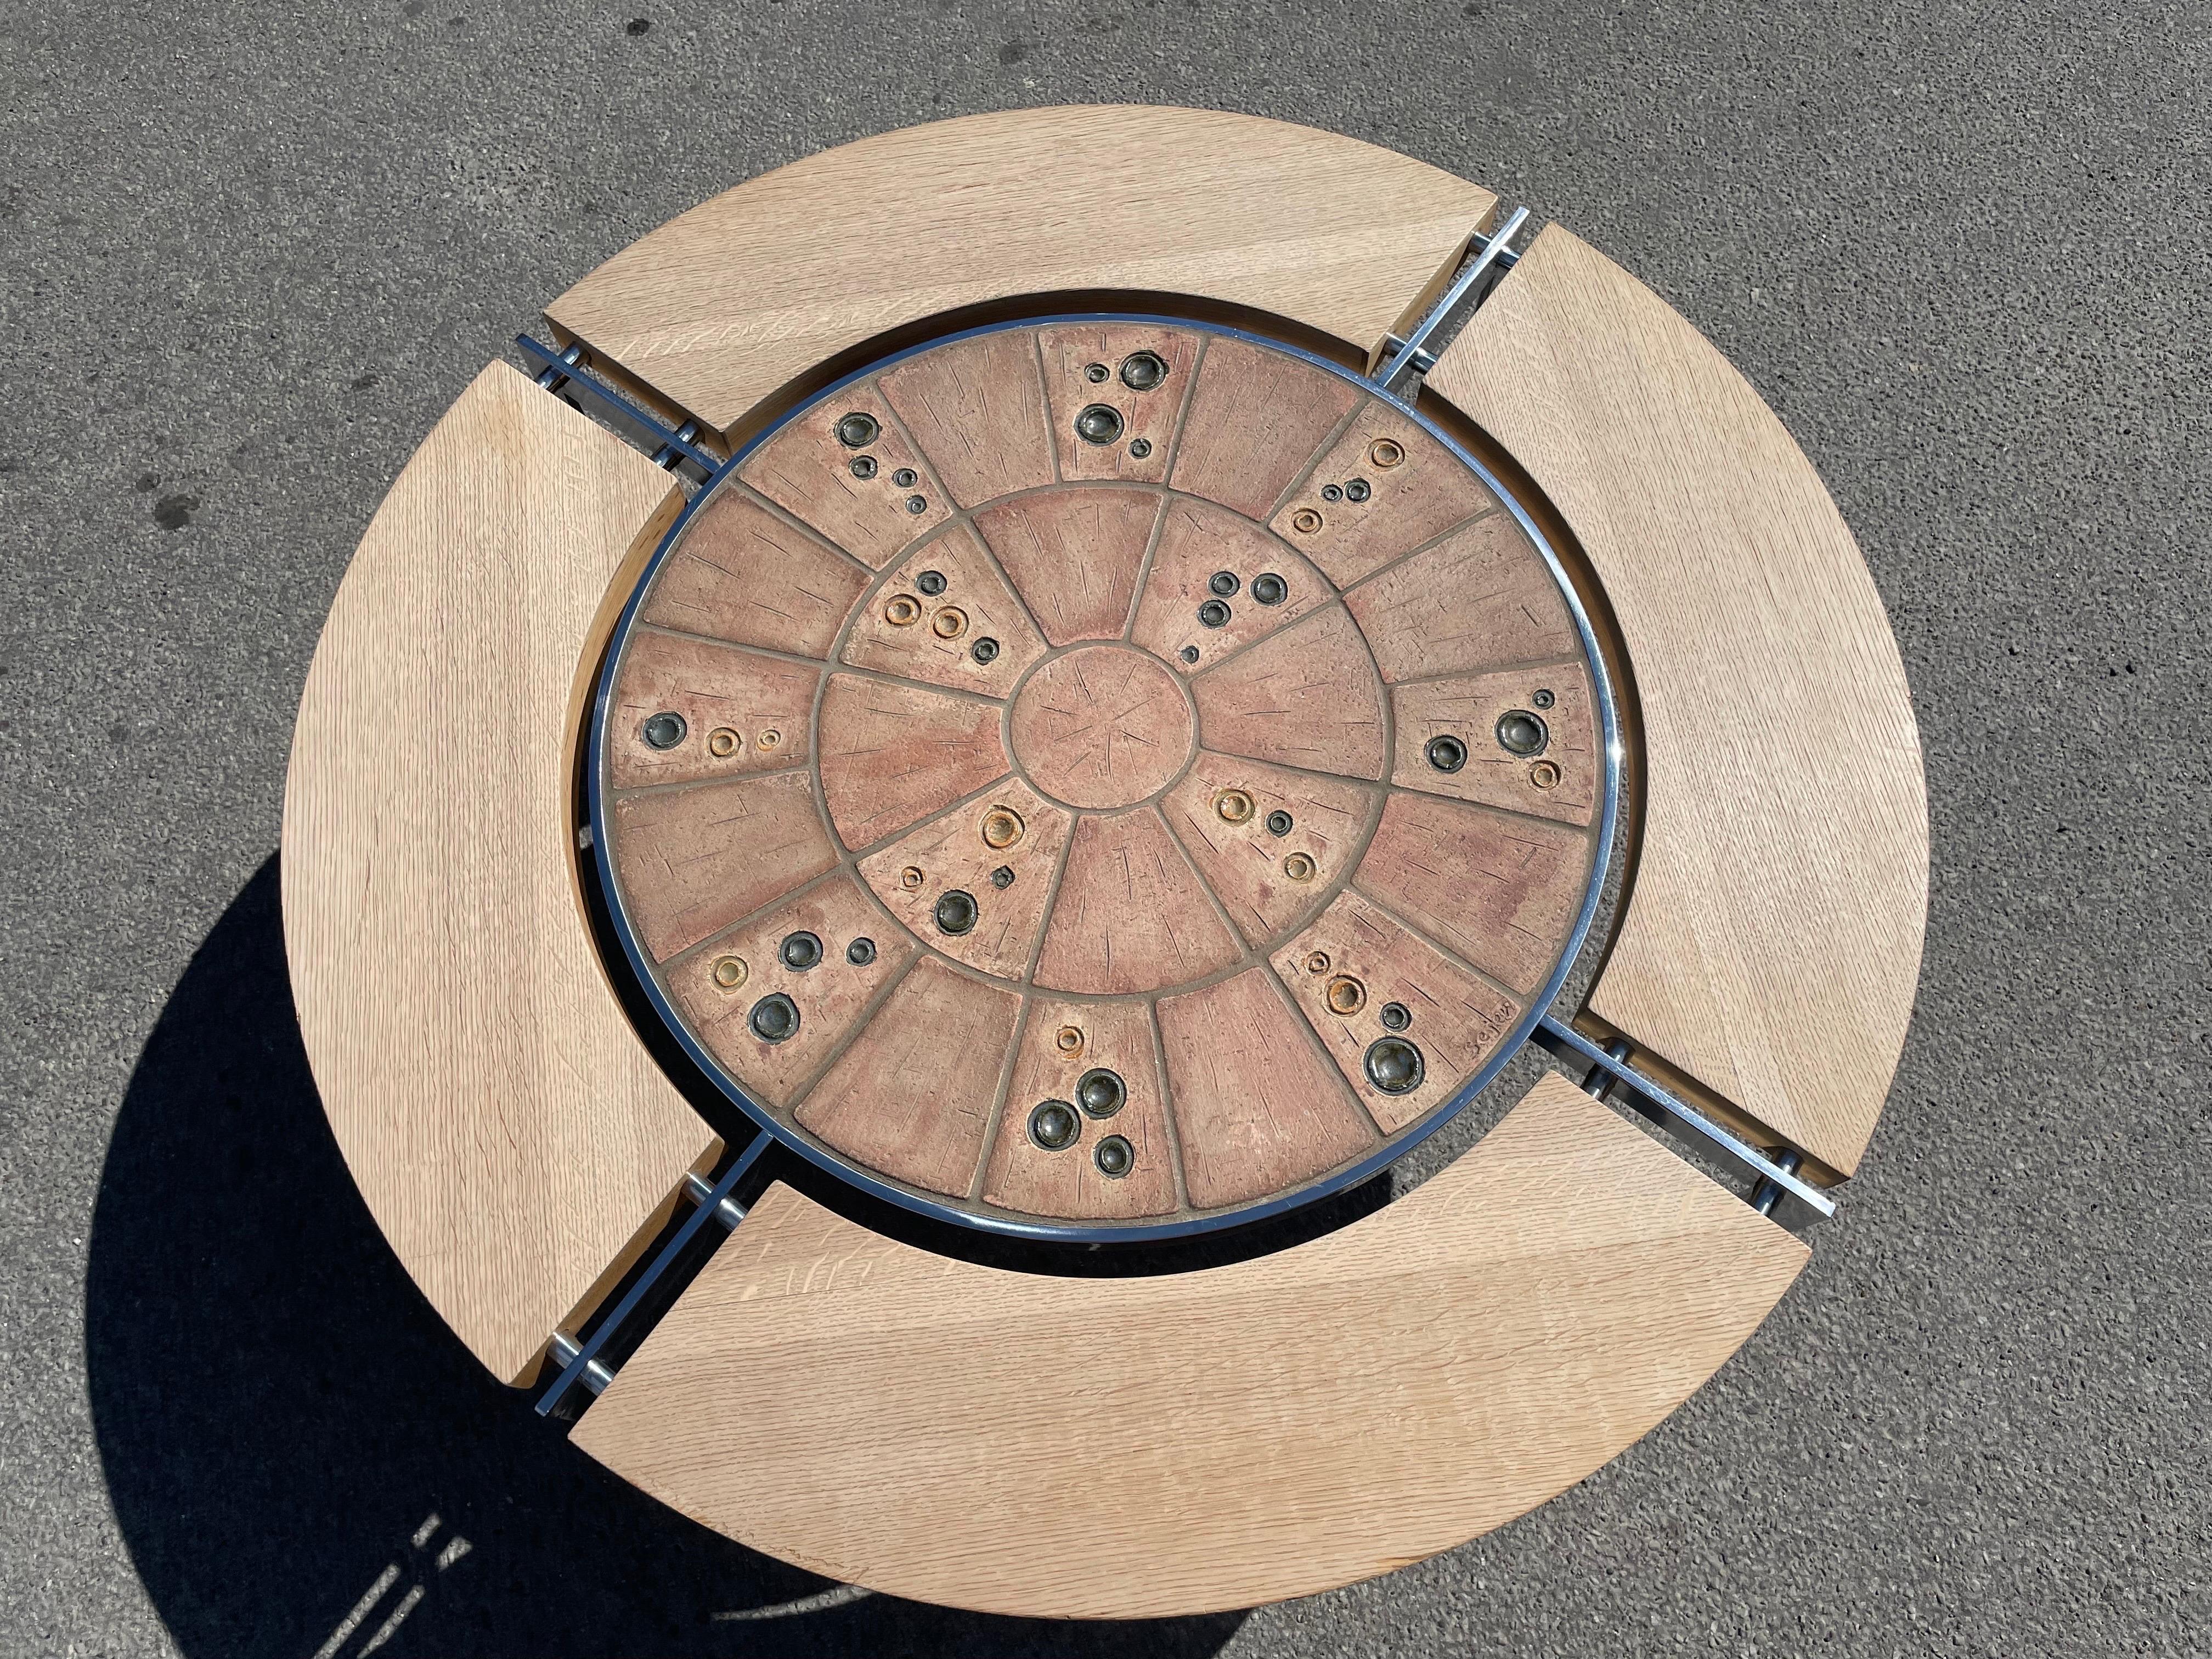 Une très rare table de canapé ronde danoise en céramique du milieu du siècle dernier avec un cadre en acier inoxydable, entièrement visible et faisant partie de l'esthétique. La table est dans un état impeccable pour son âge, entièrement d'origine